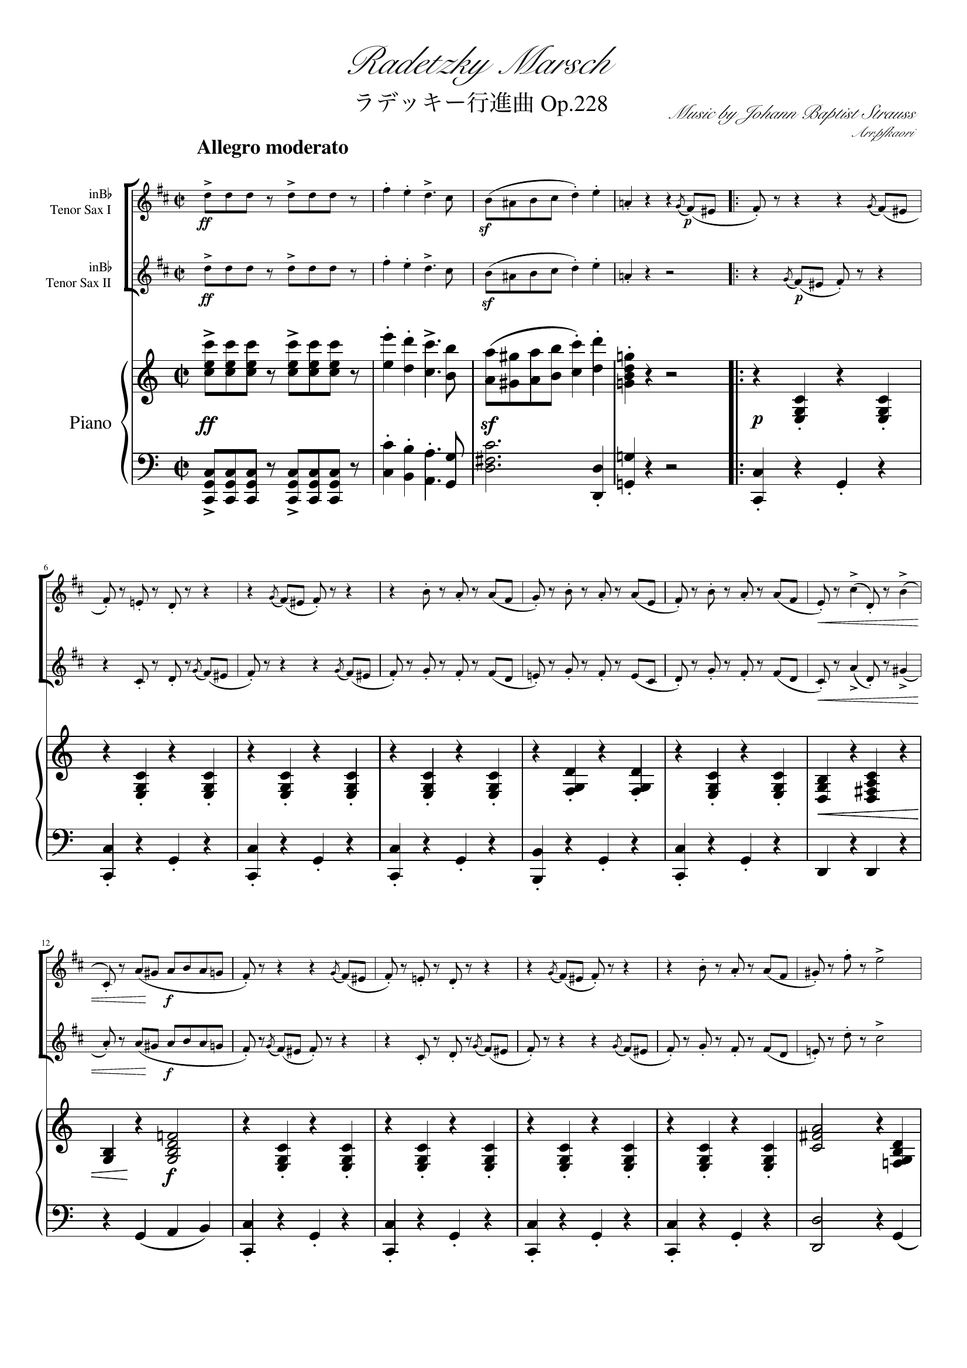 ヨハンシュトラウス1世 - ラデッキー行進曲 (C・ピアノトリオ/テナーサックスデュオ) by pfkaori